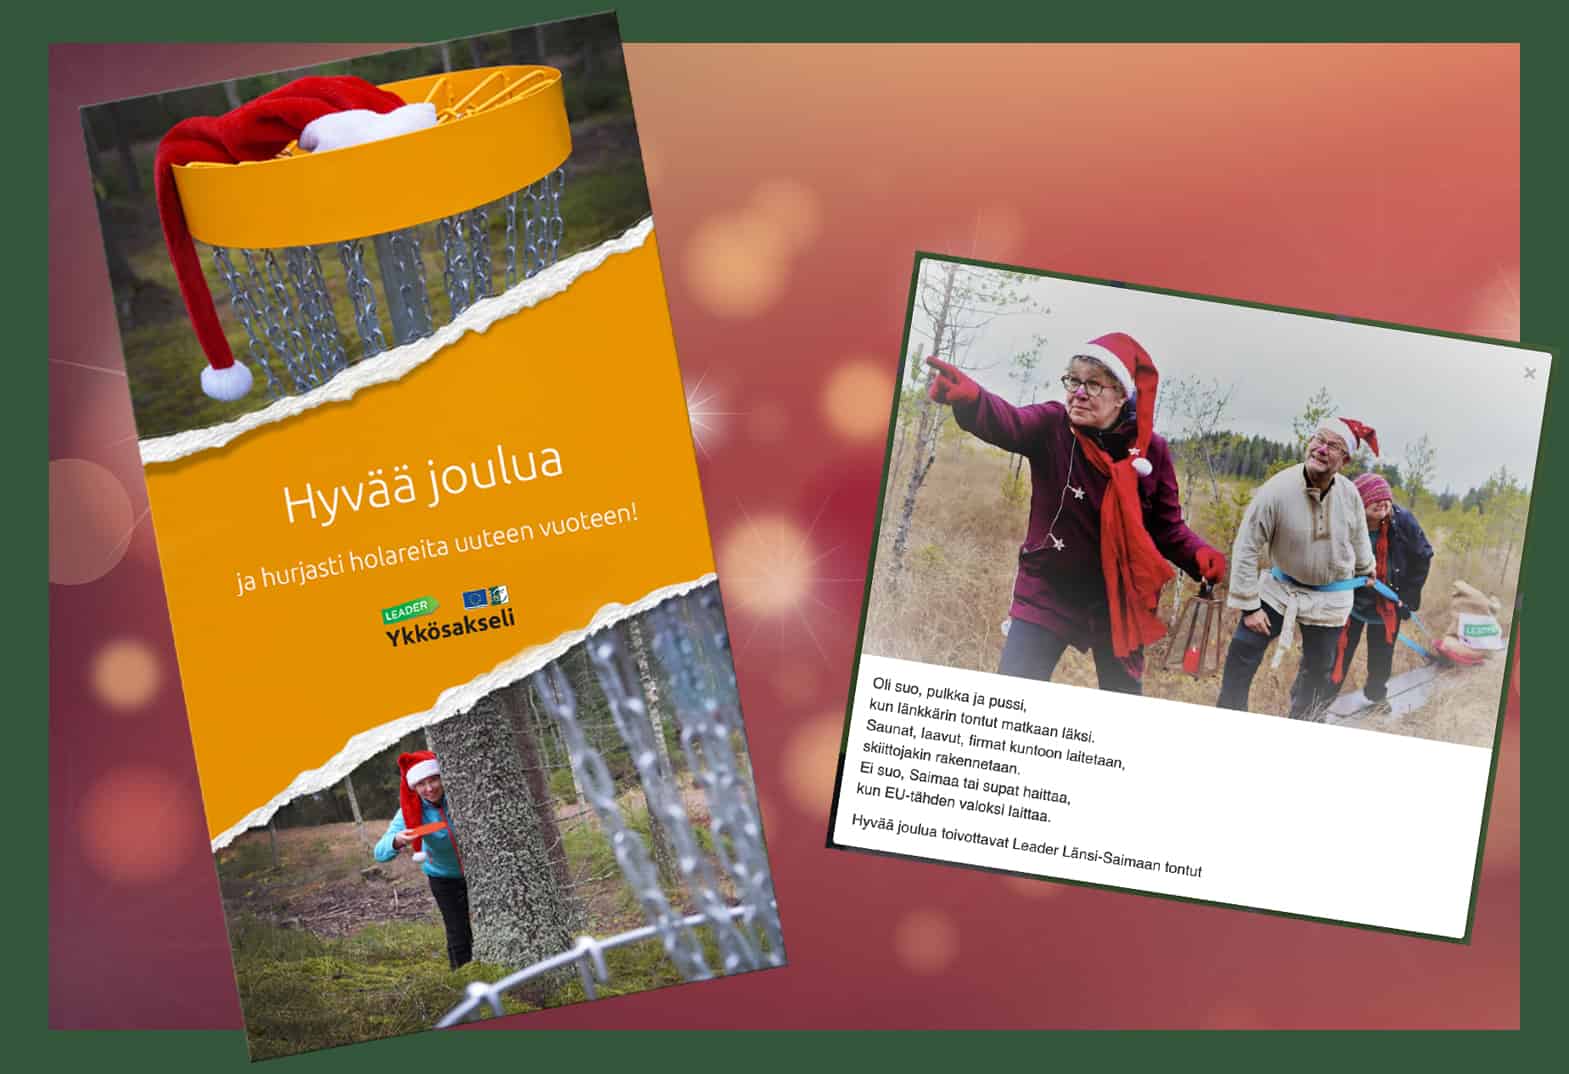 Ensimmäiset luukut avattu! Varsinais-Suomen Leader-ryhmät mukana maaseutuverkoston joulukalenterissa